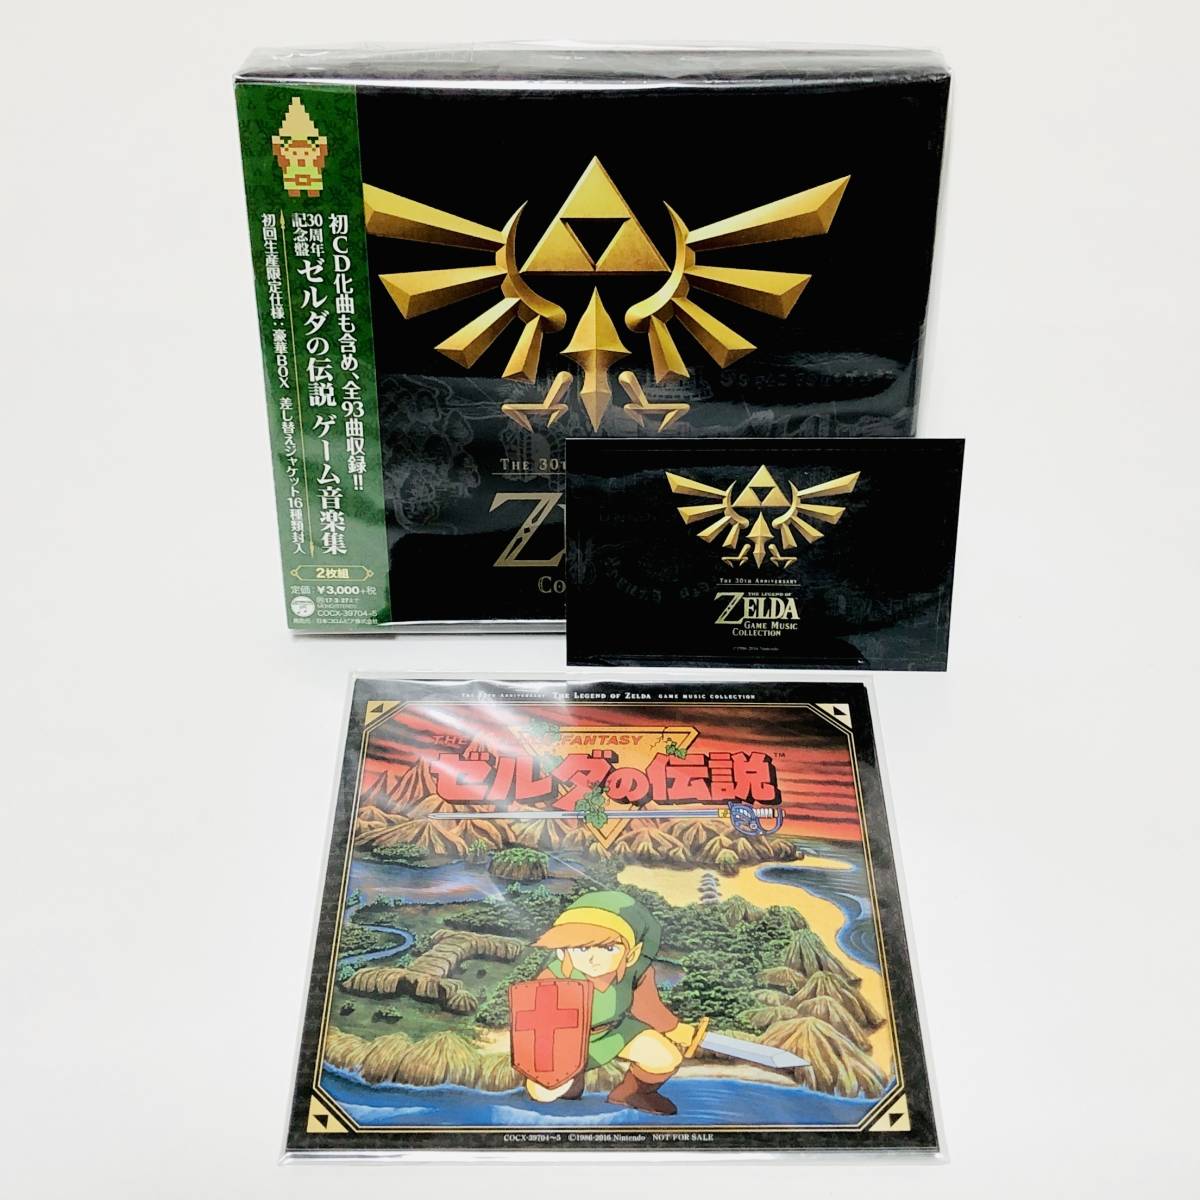 30周年記念盤 ゼルダの伝説 ゲーム音楽集 2枚組CD 初回限定仕様 The 30th Anniversary The Legend of Zelda Game Music Collection CD_画像1